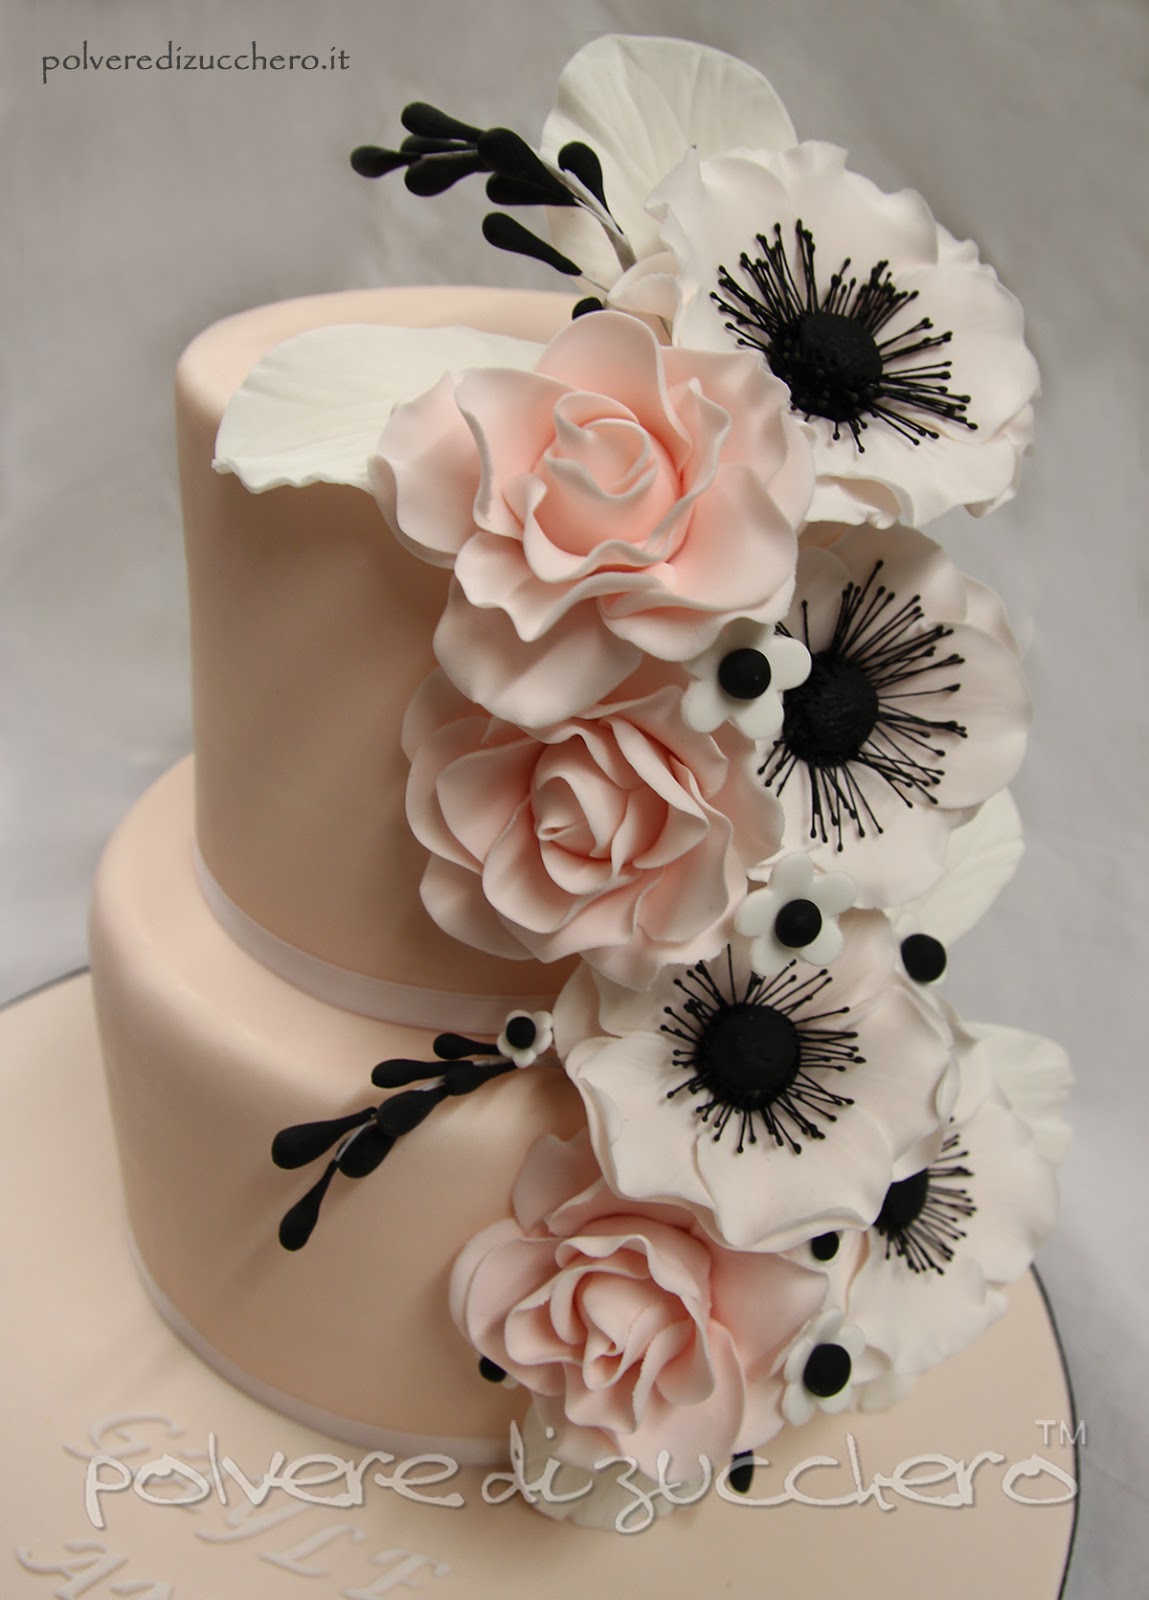 wedding cake anemoni rose torta nuziale rose cake design pasta di zucchero polvere di zucchero